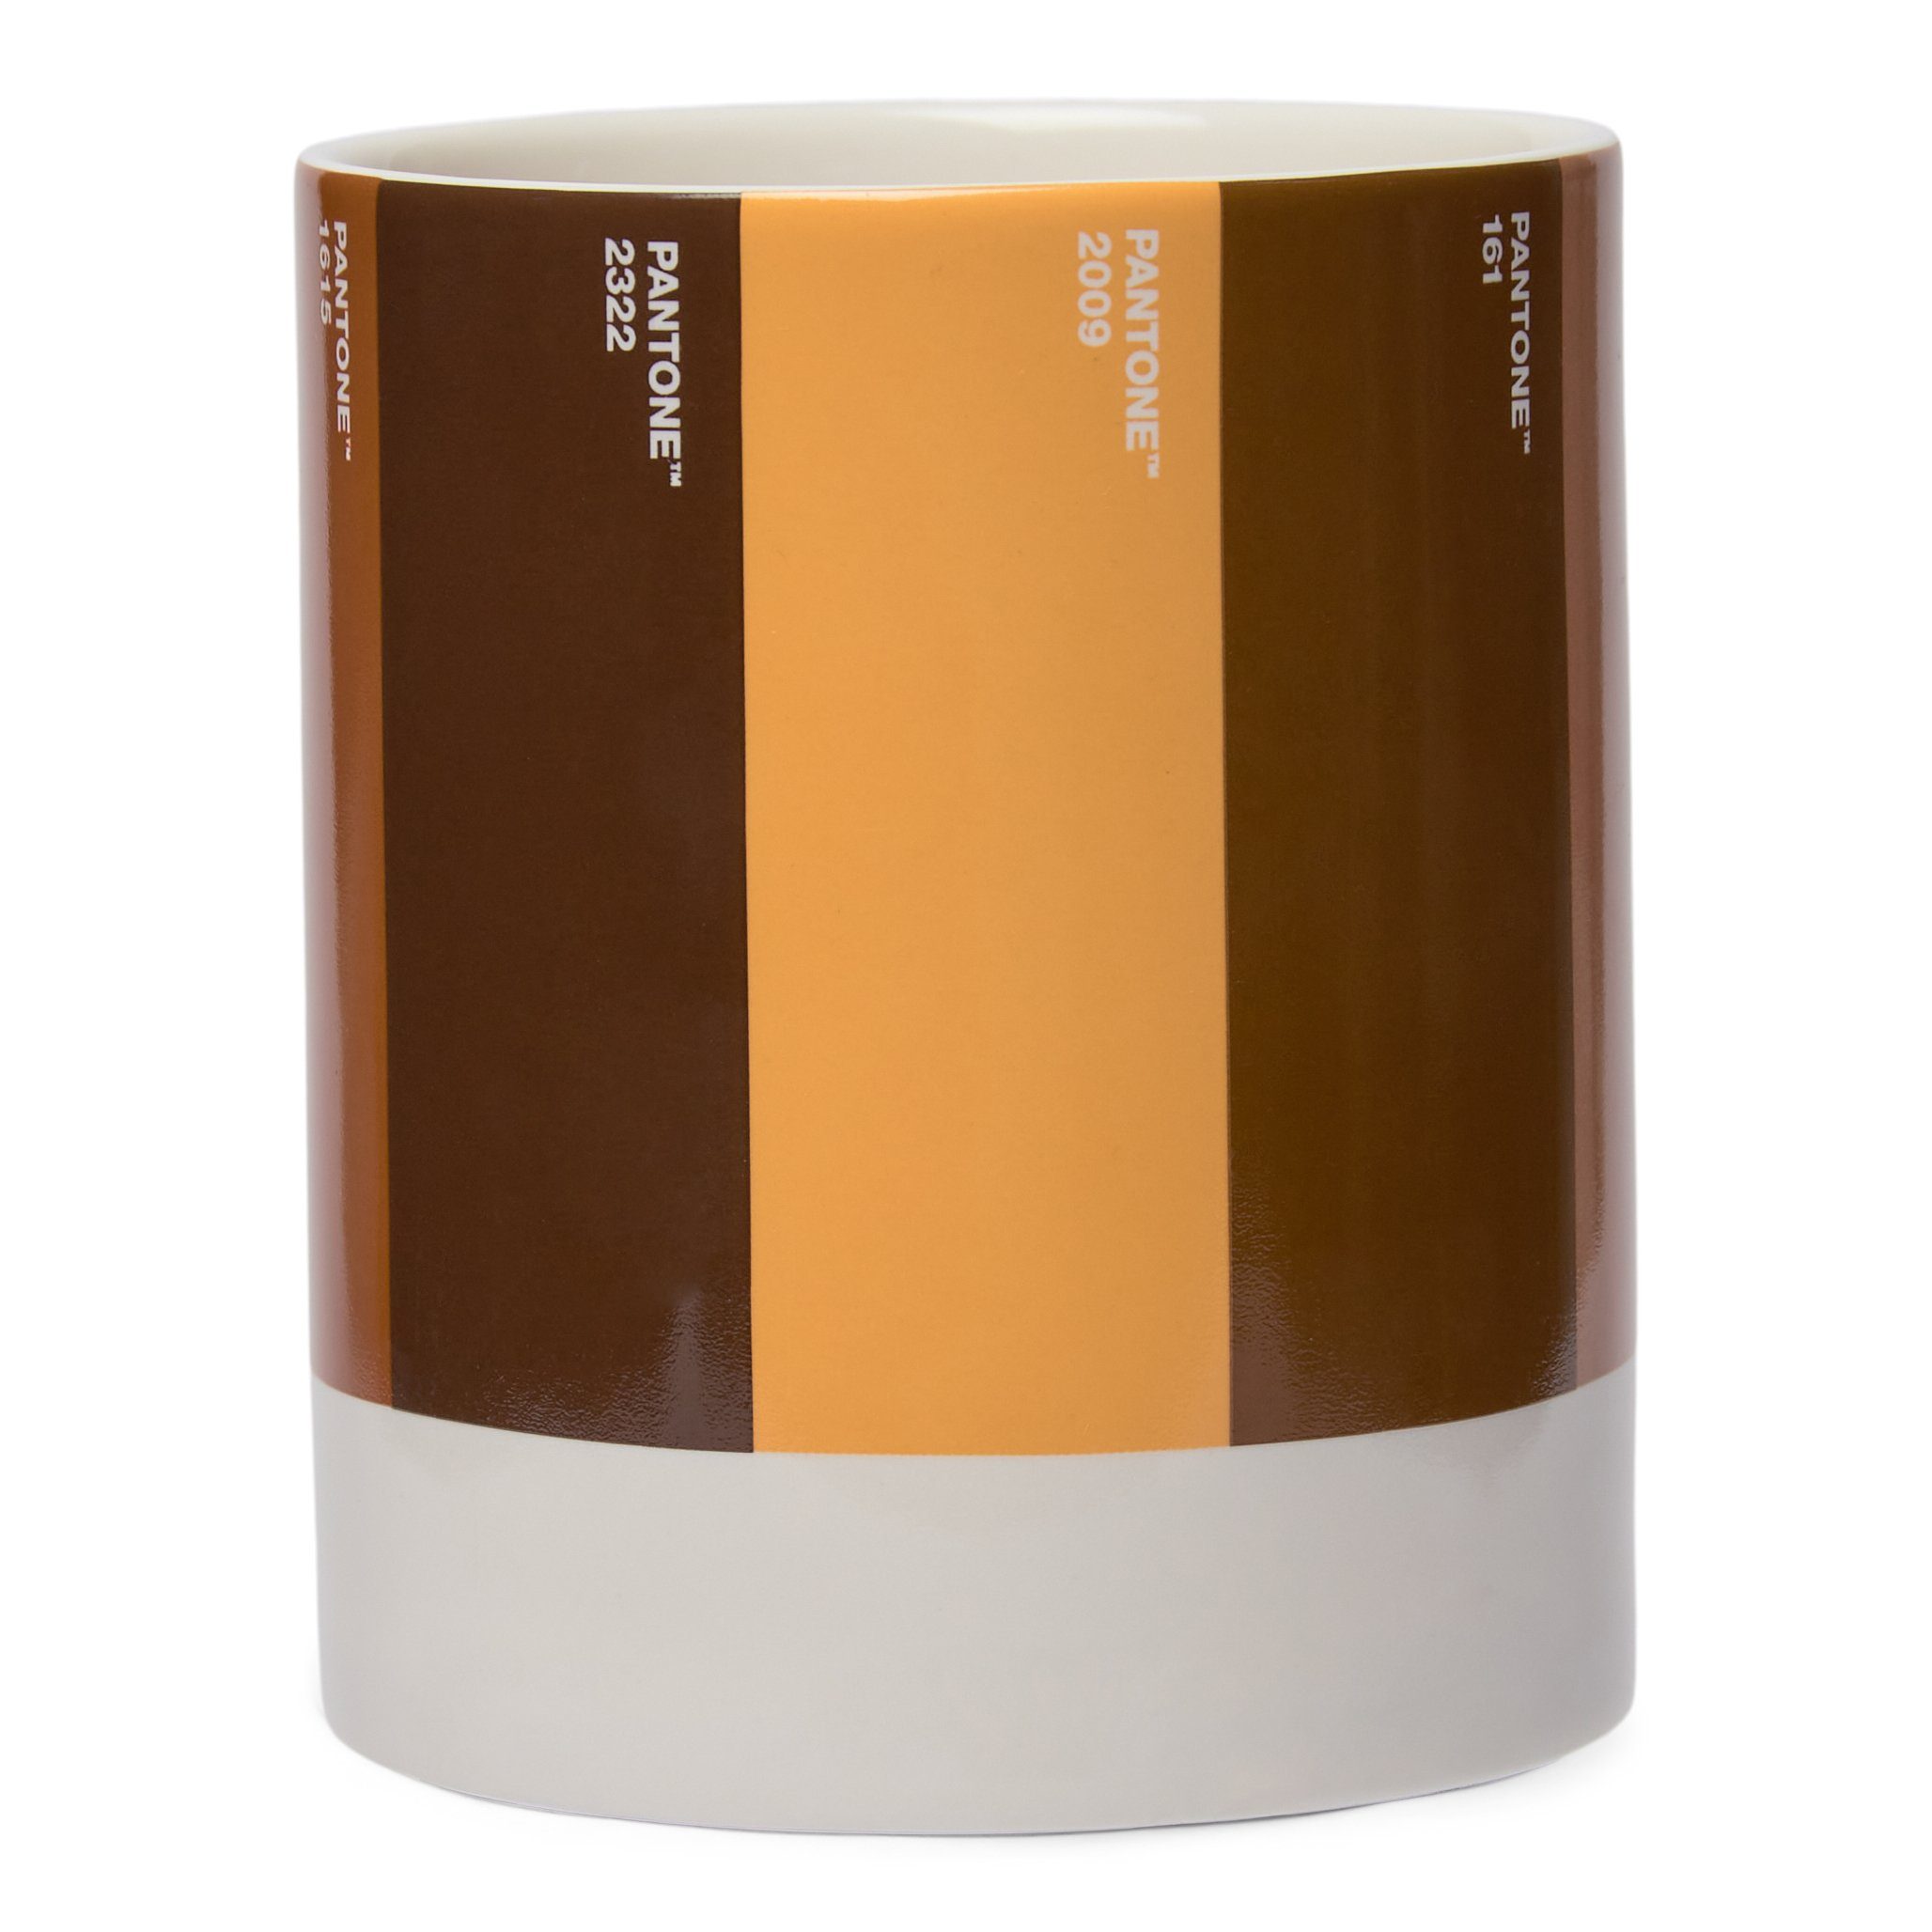 Porzellan Kaffeeservice, 375ml, Geschenkbox, Kaffeebecher, inkl. CULTURE PANTONE